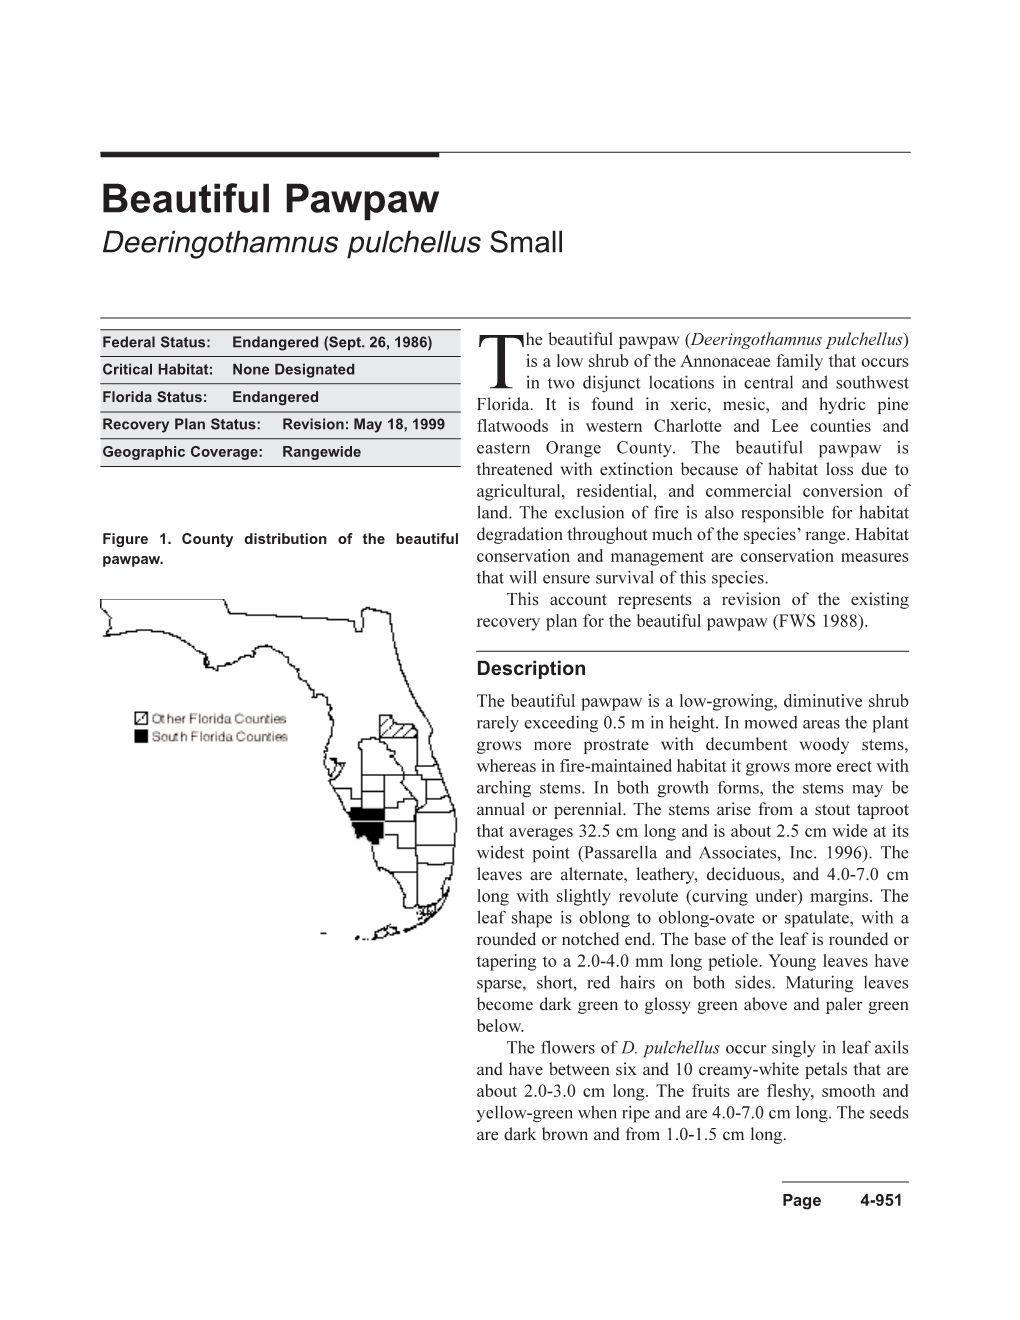 Beautiful Pawpaw Deeringothamnus Pulchellus Small